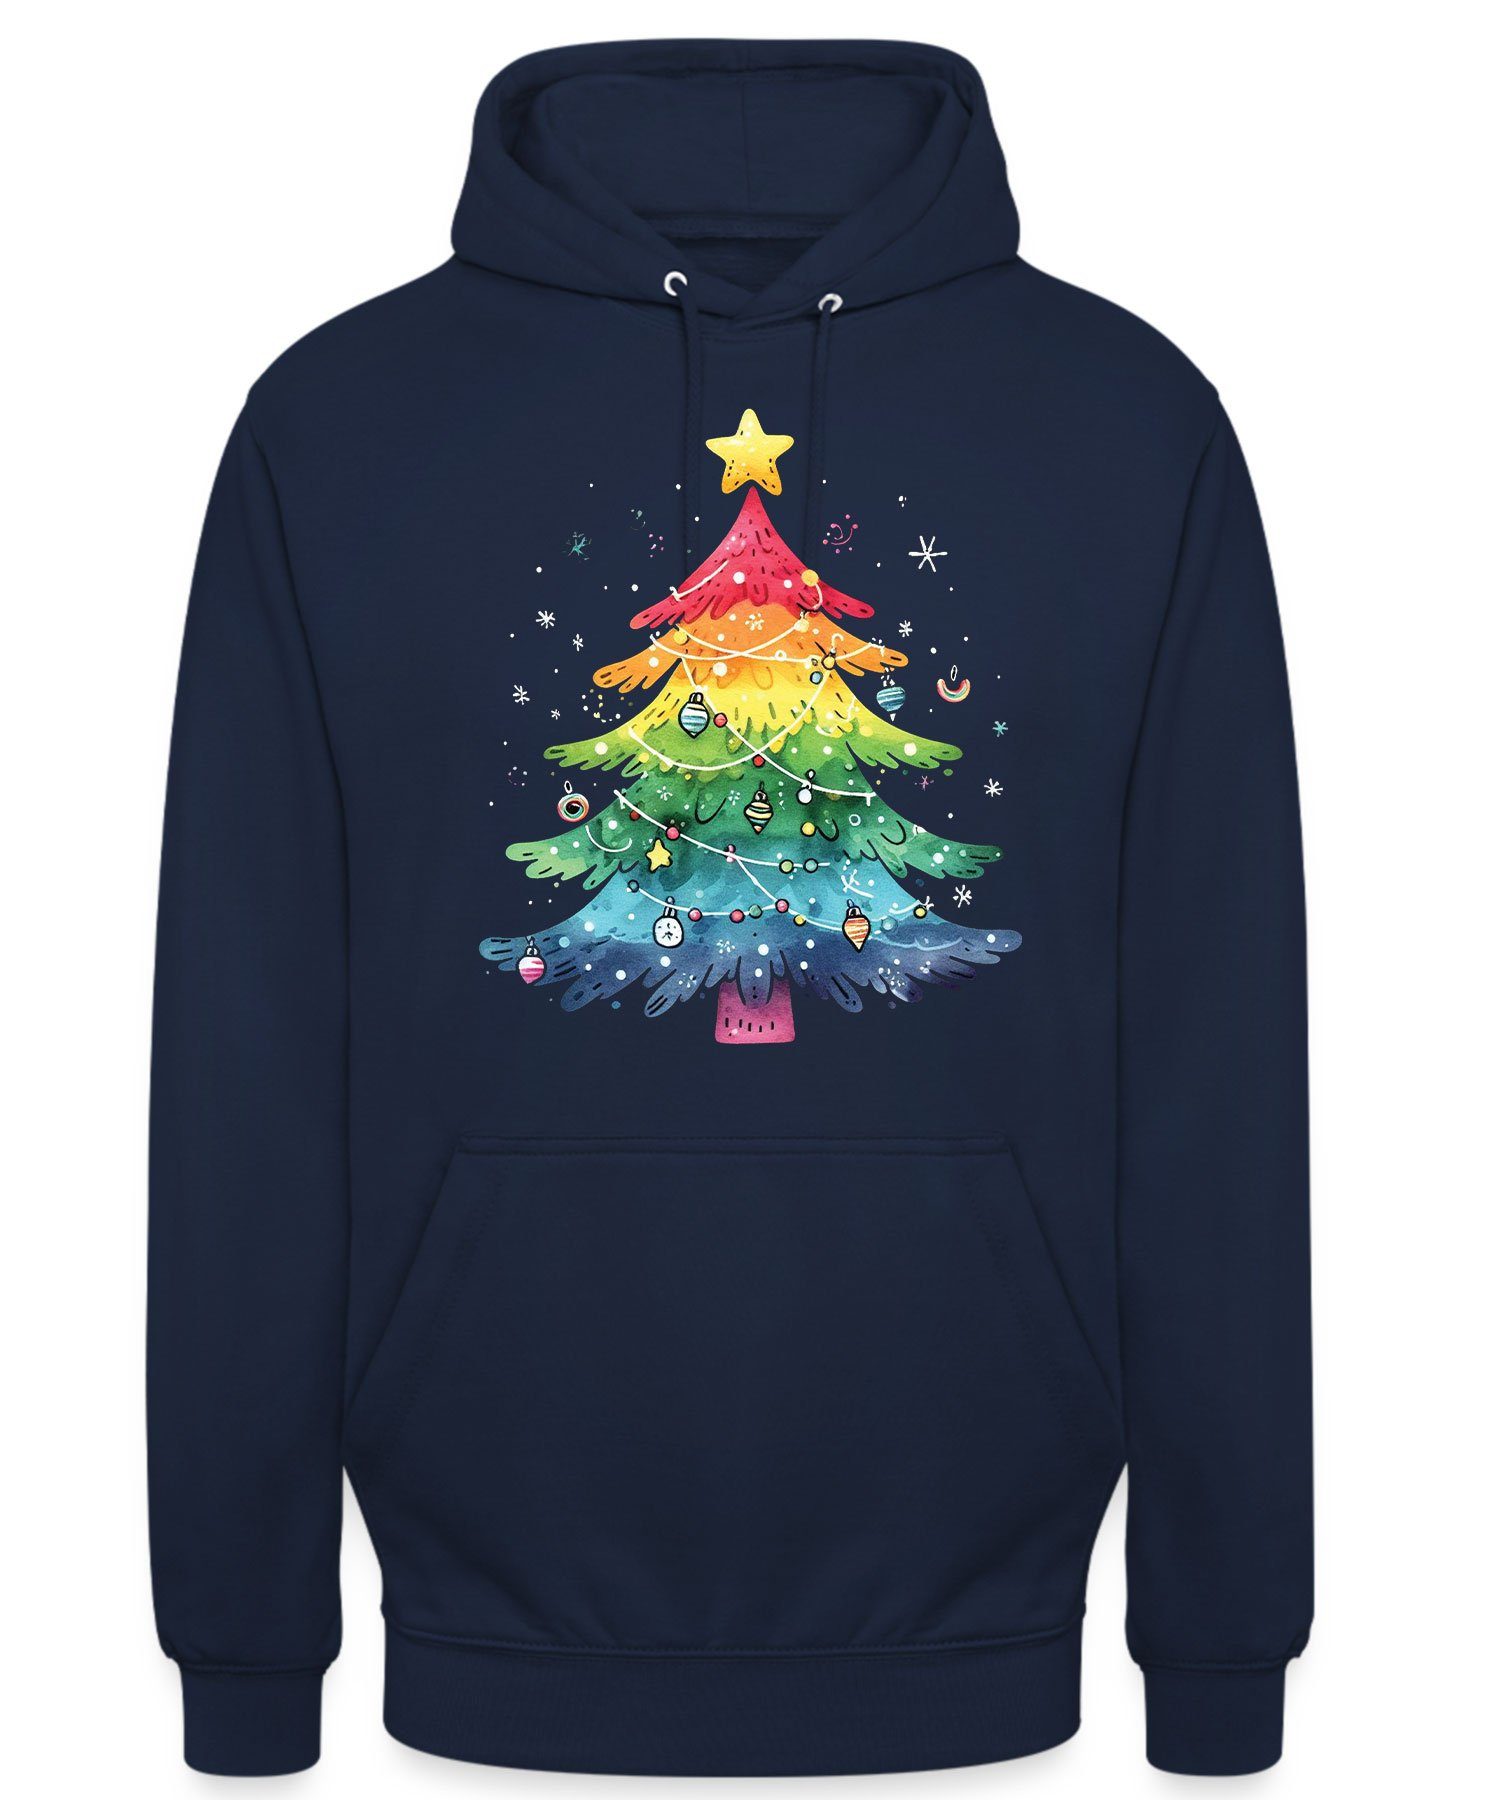 (1-tlg) Weihnachtsbaum X-mas Weihnachtsgeschenk Navy - Kapuzenpullover Formatee Weihnachten Blau LGBT Quattro Regenbogen